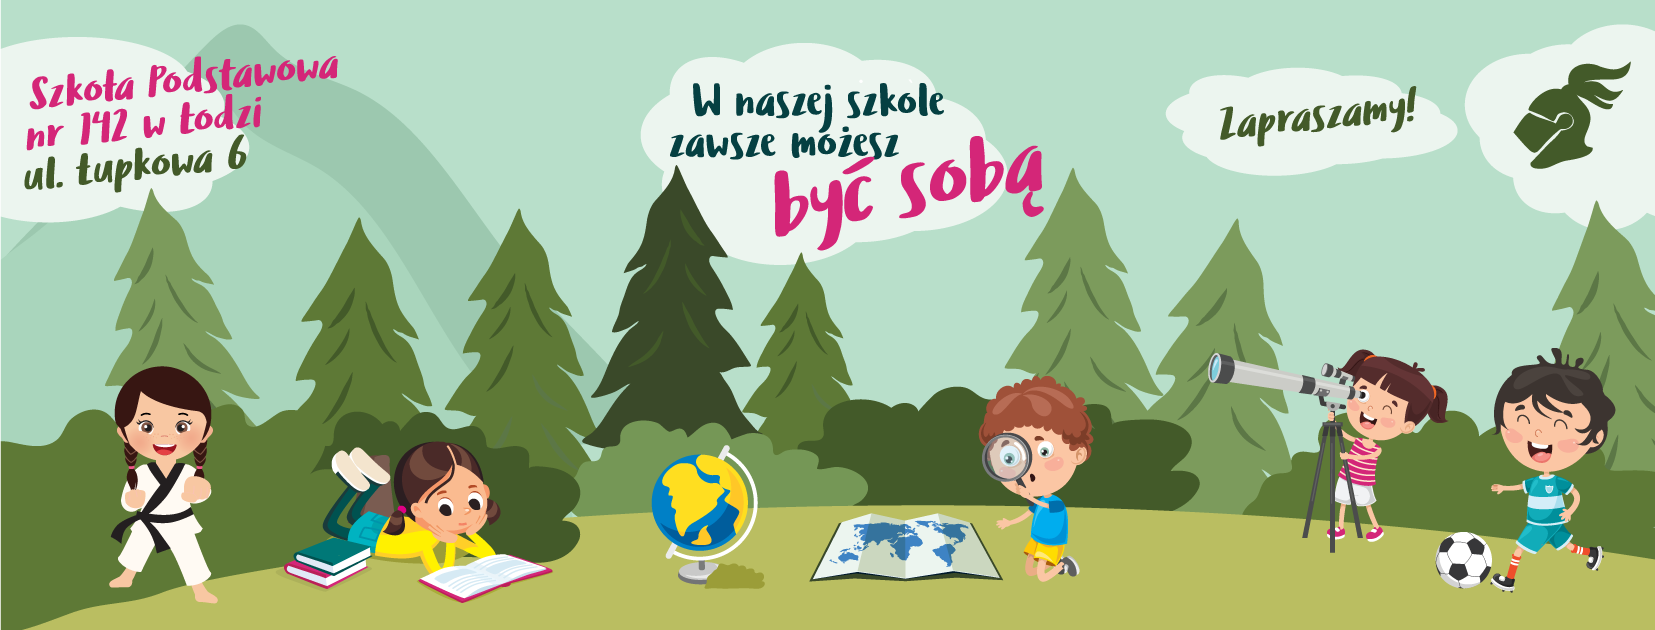 Plakat z hasłem zapraszającym do Szkoły Podstawowej nr 142 w Łodzi.